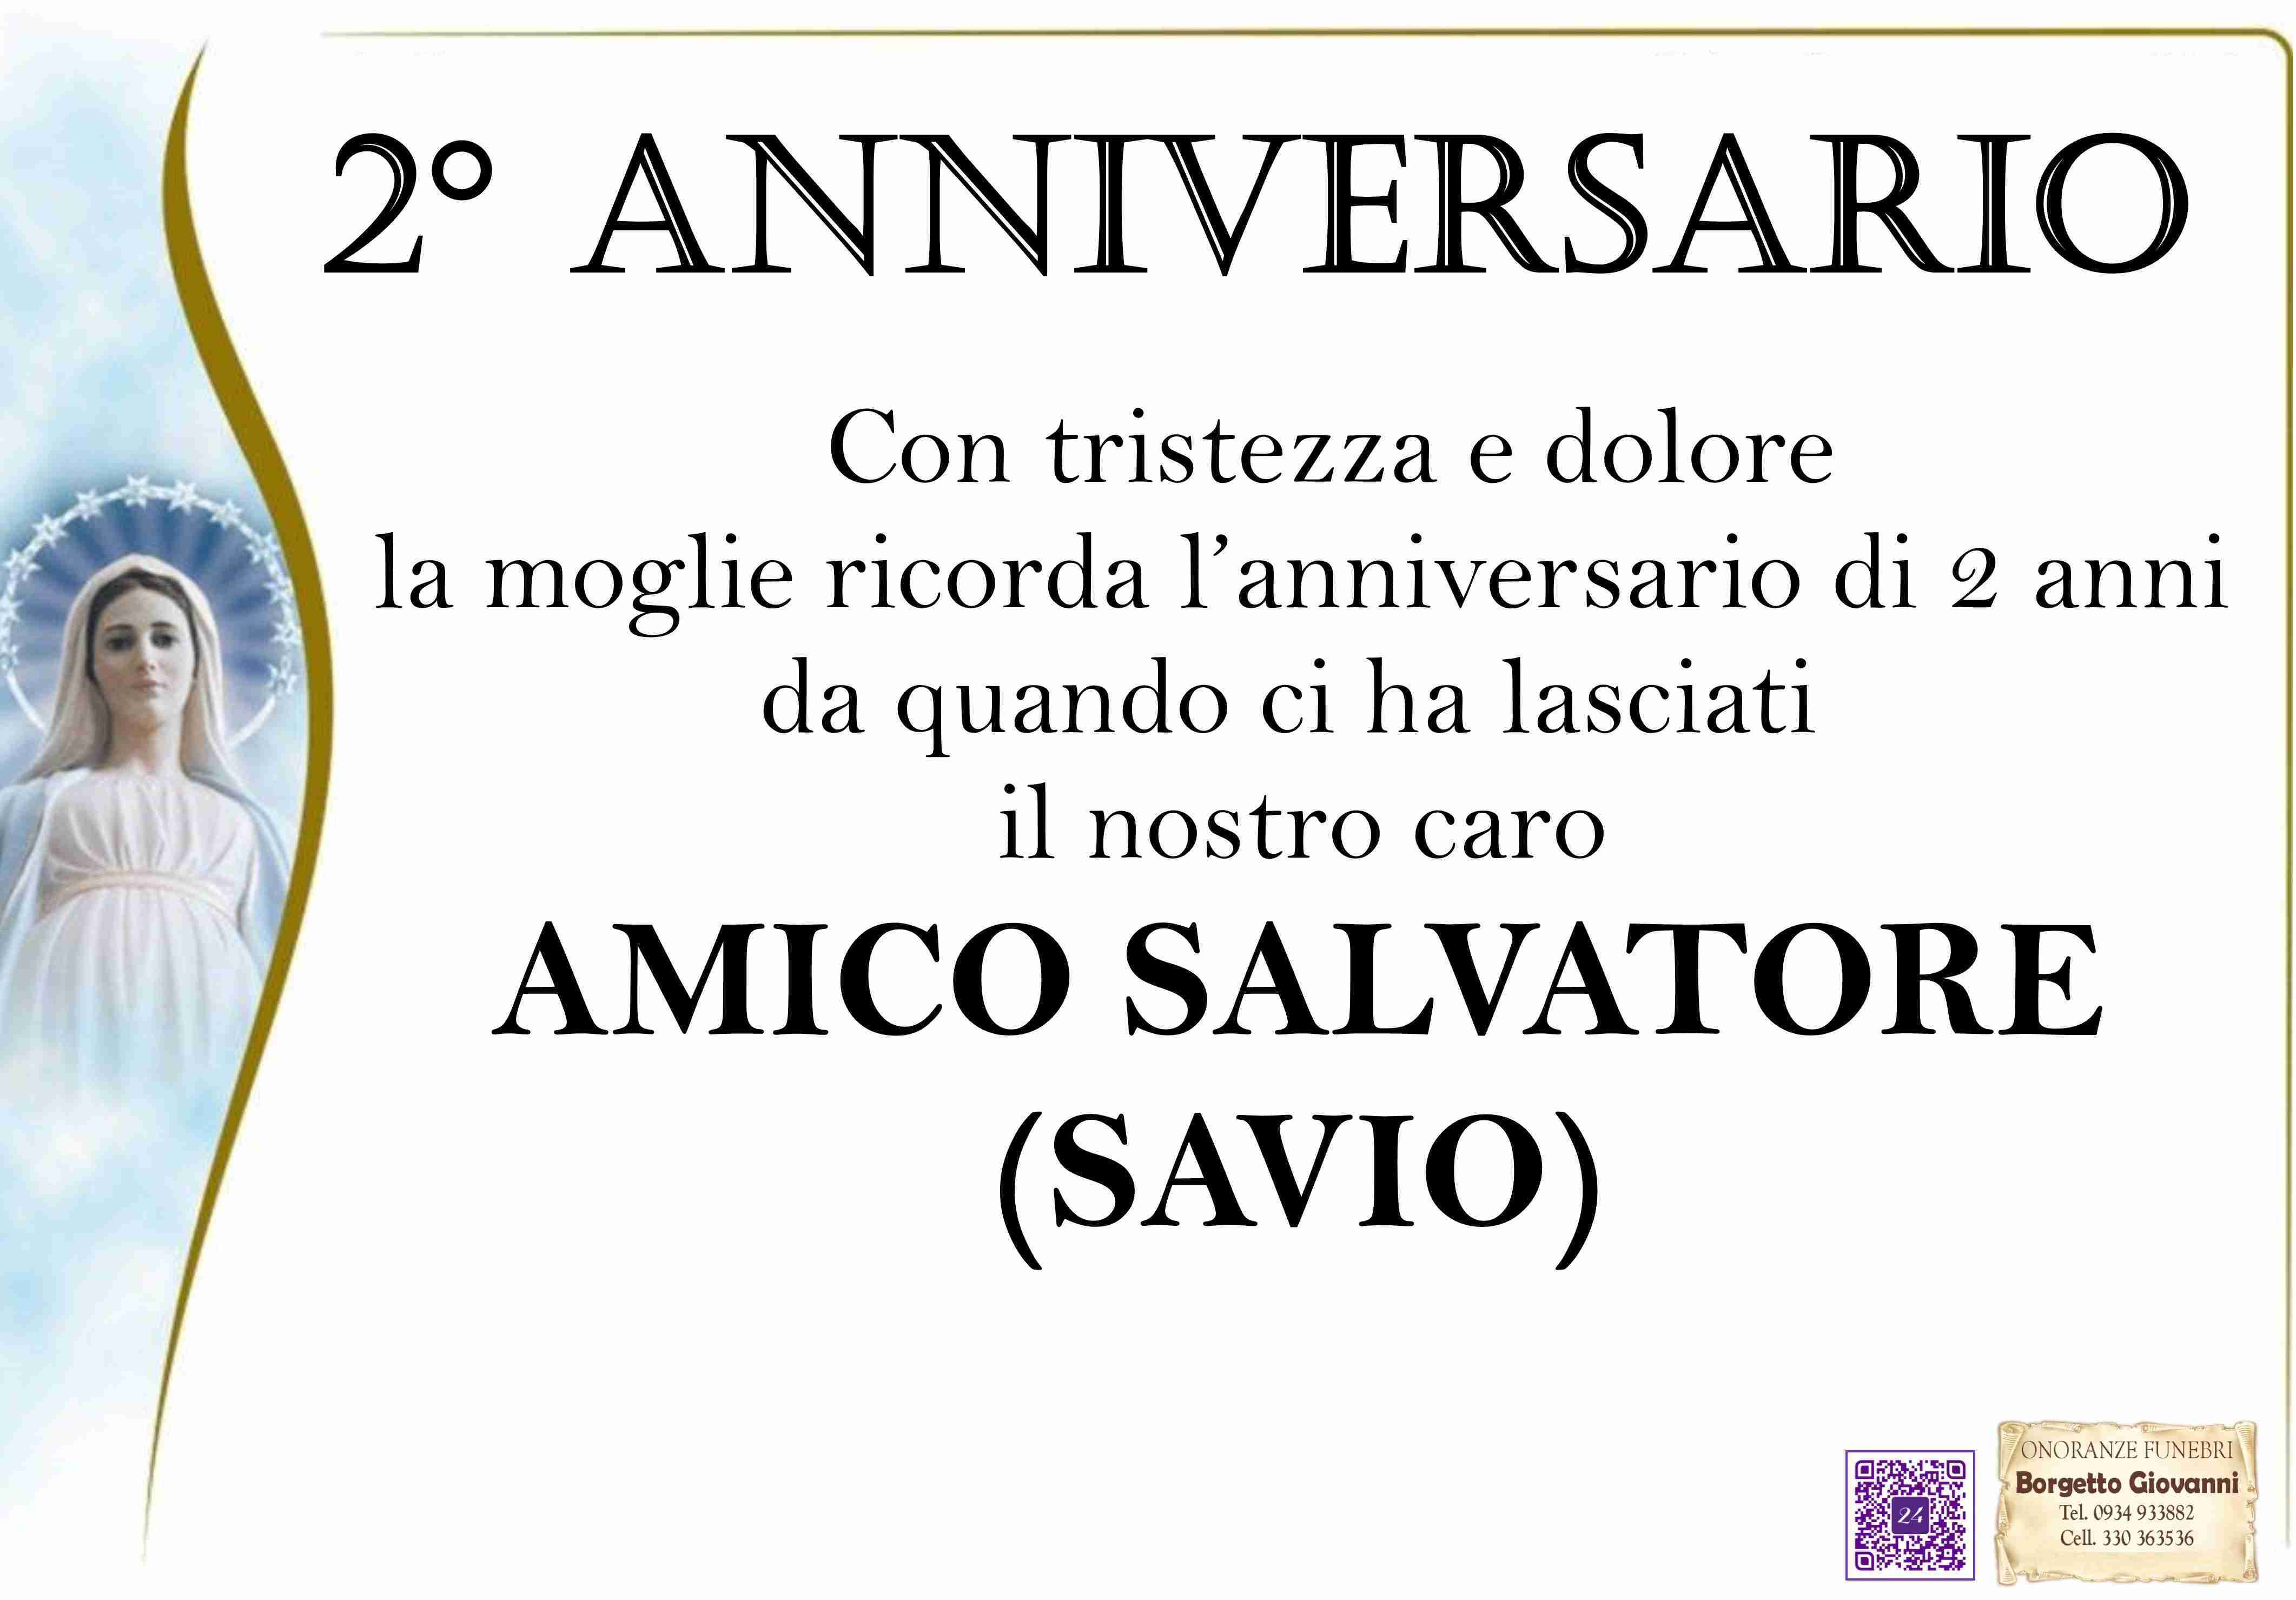 Salvatore Amico